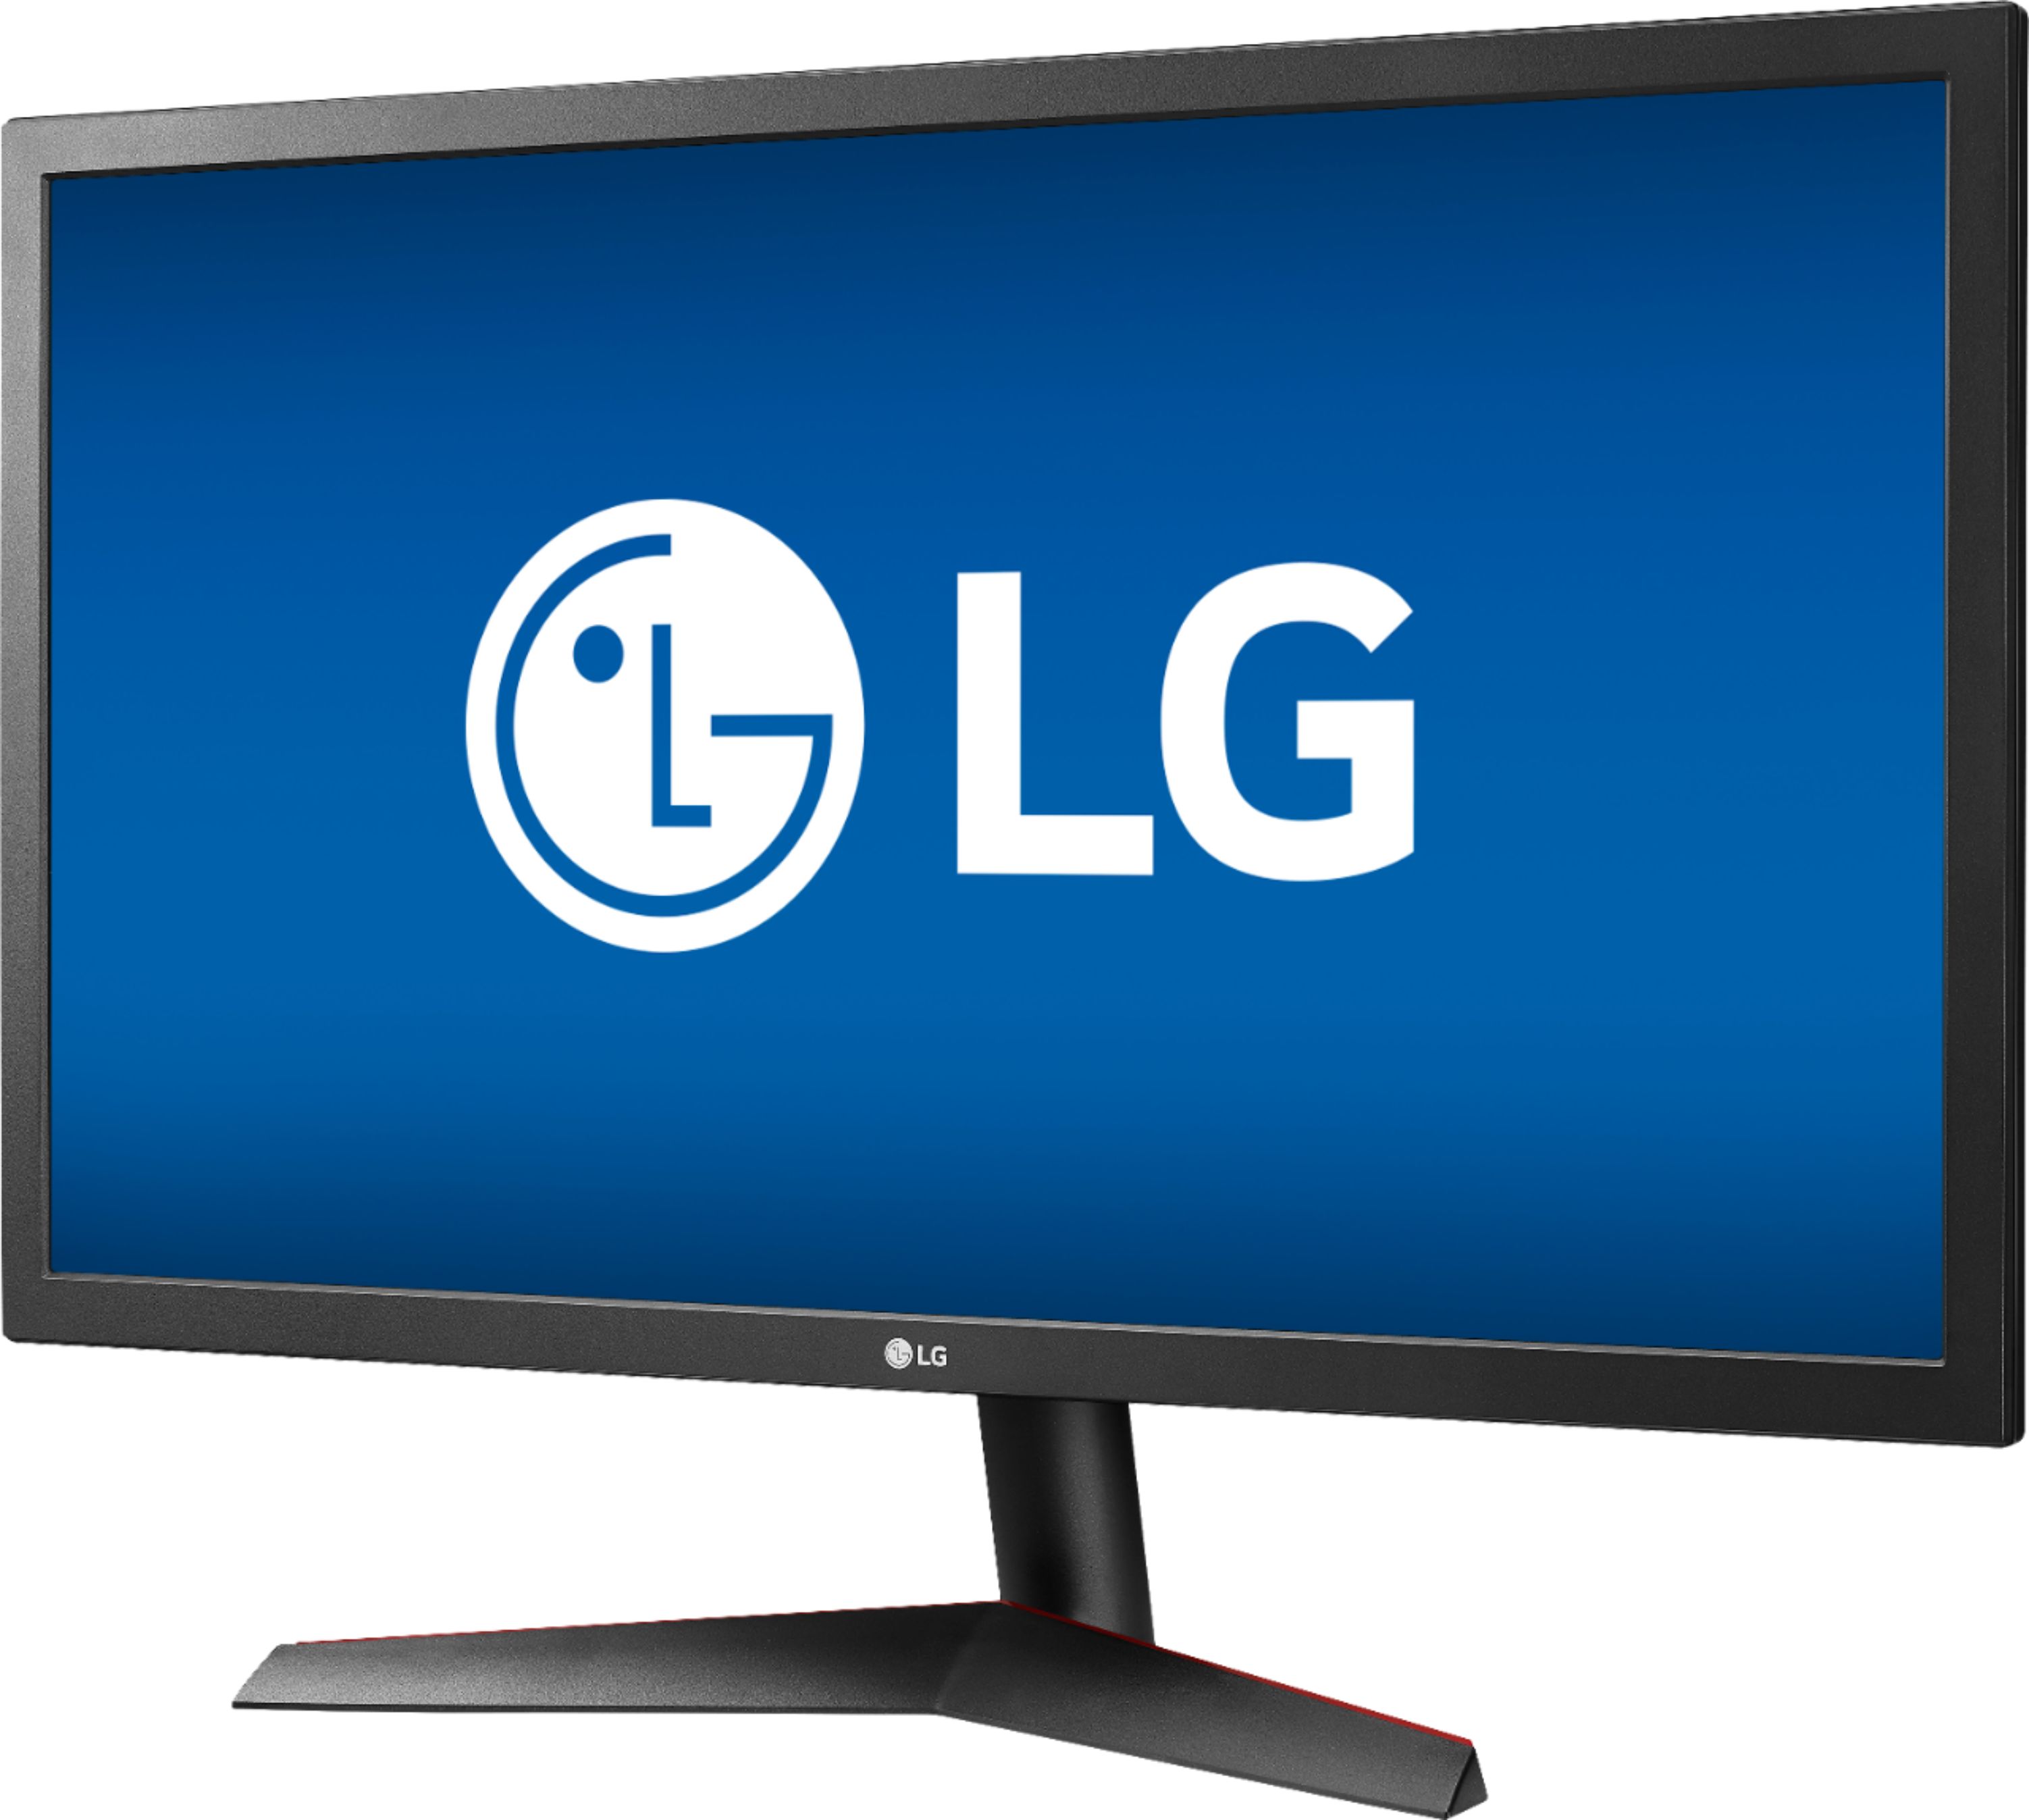 Best Buy: LG UltraGear 24 LED FHD FreeSync Monitor (DisplayPort, HDMI)  Black 24GL600F